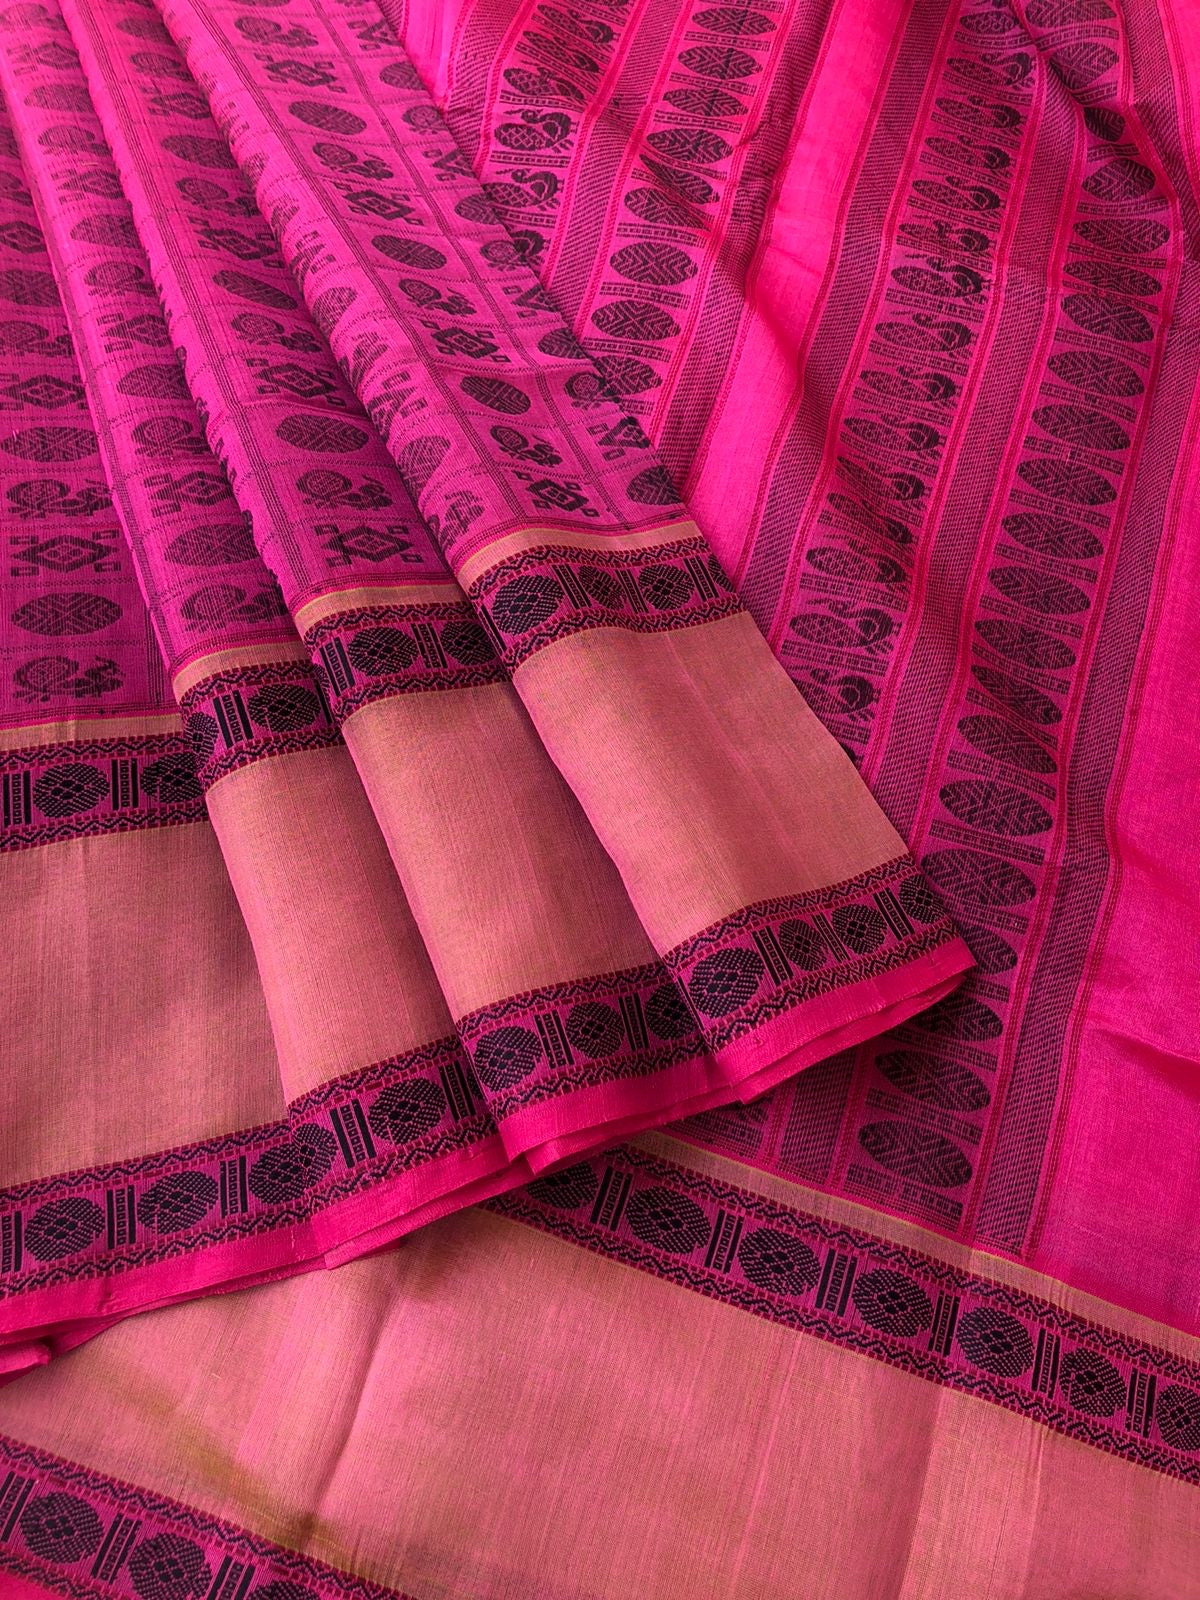 Woven Motifs Silk Cotton - burnt pink and black 1000 buttas